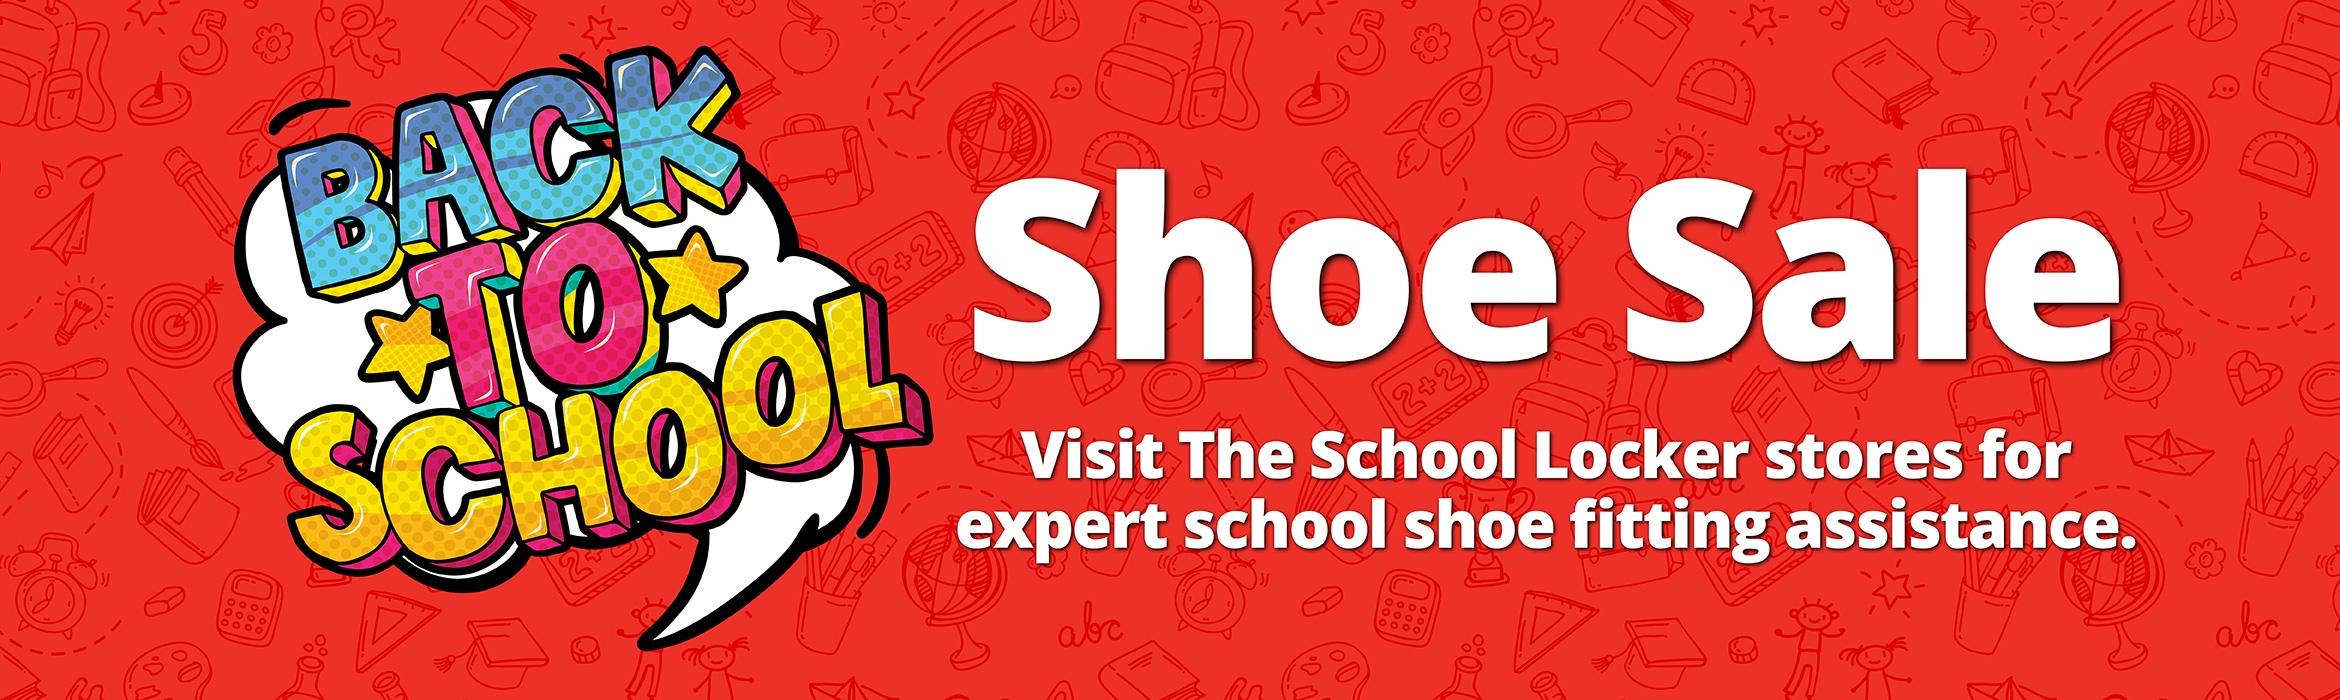 sale school shoes